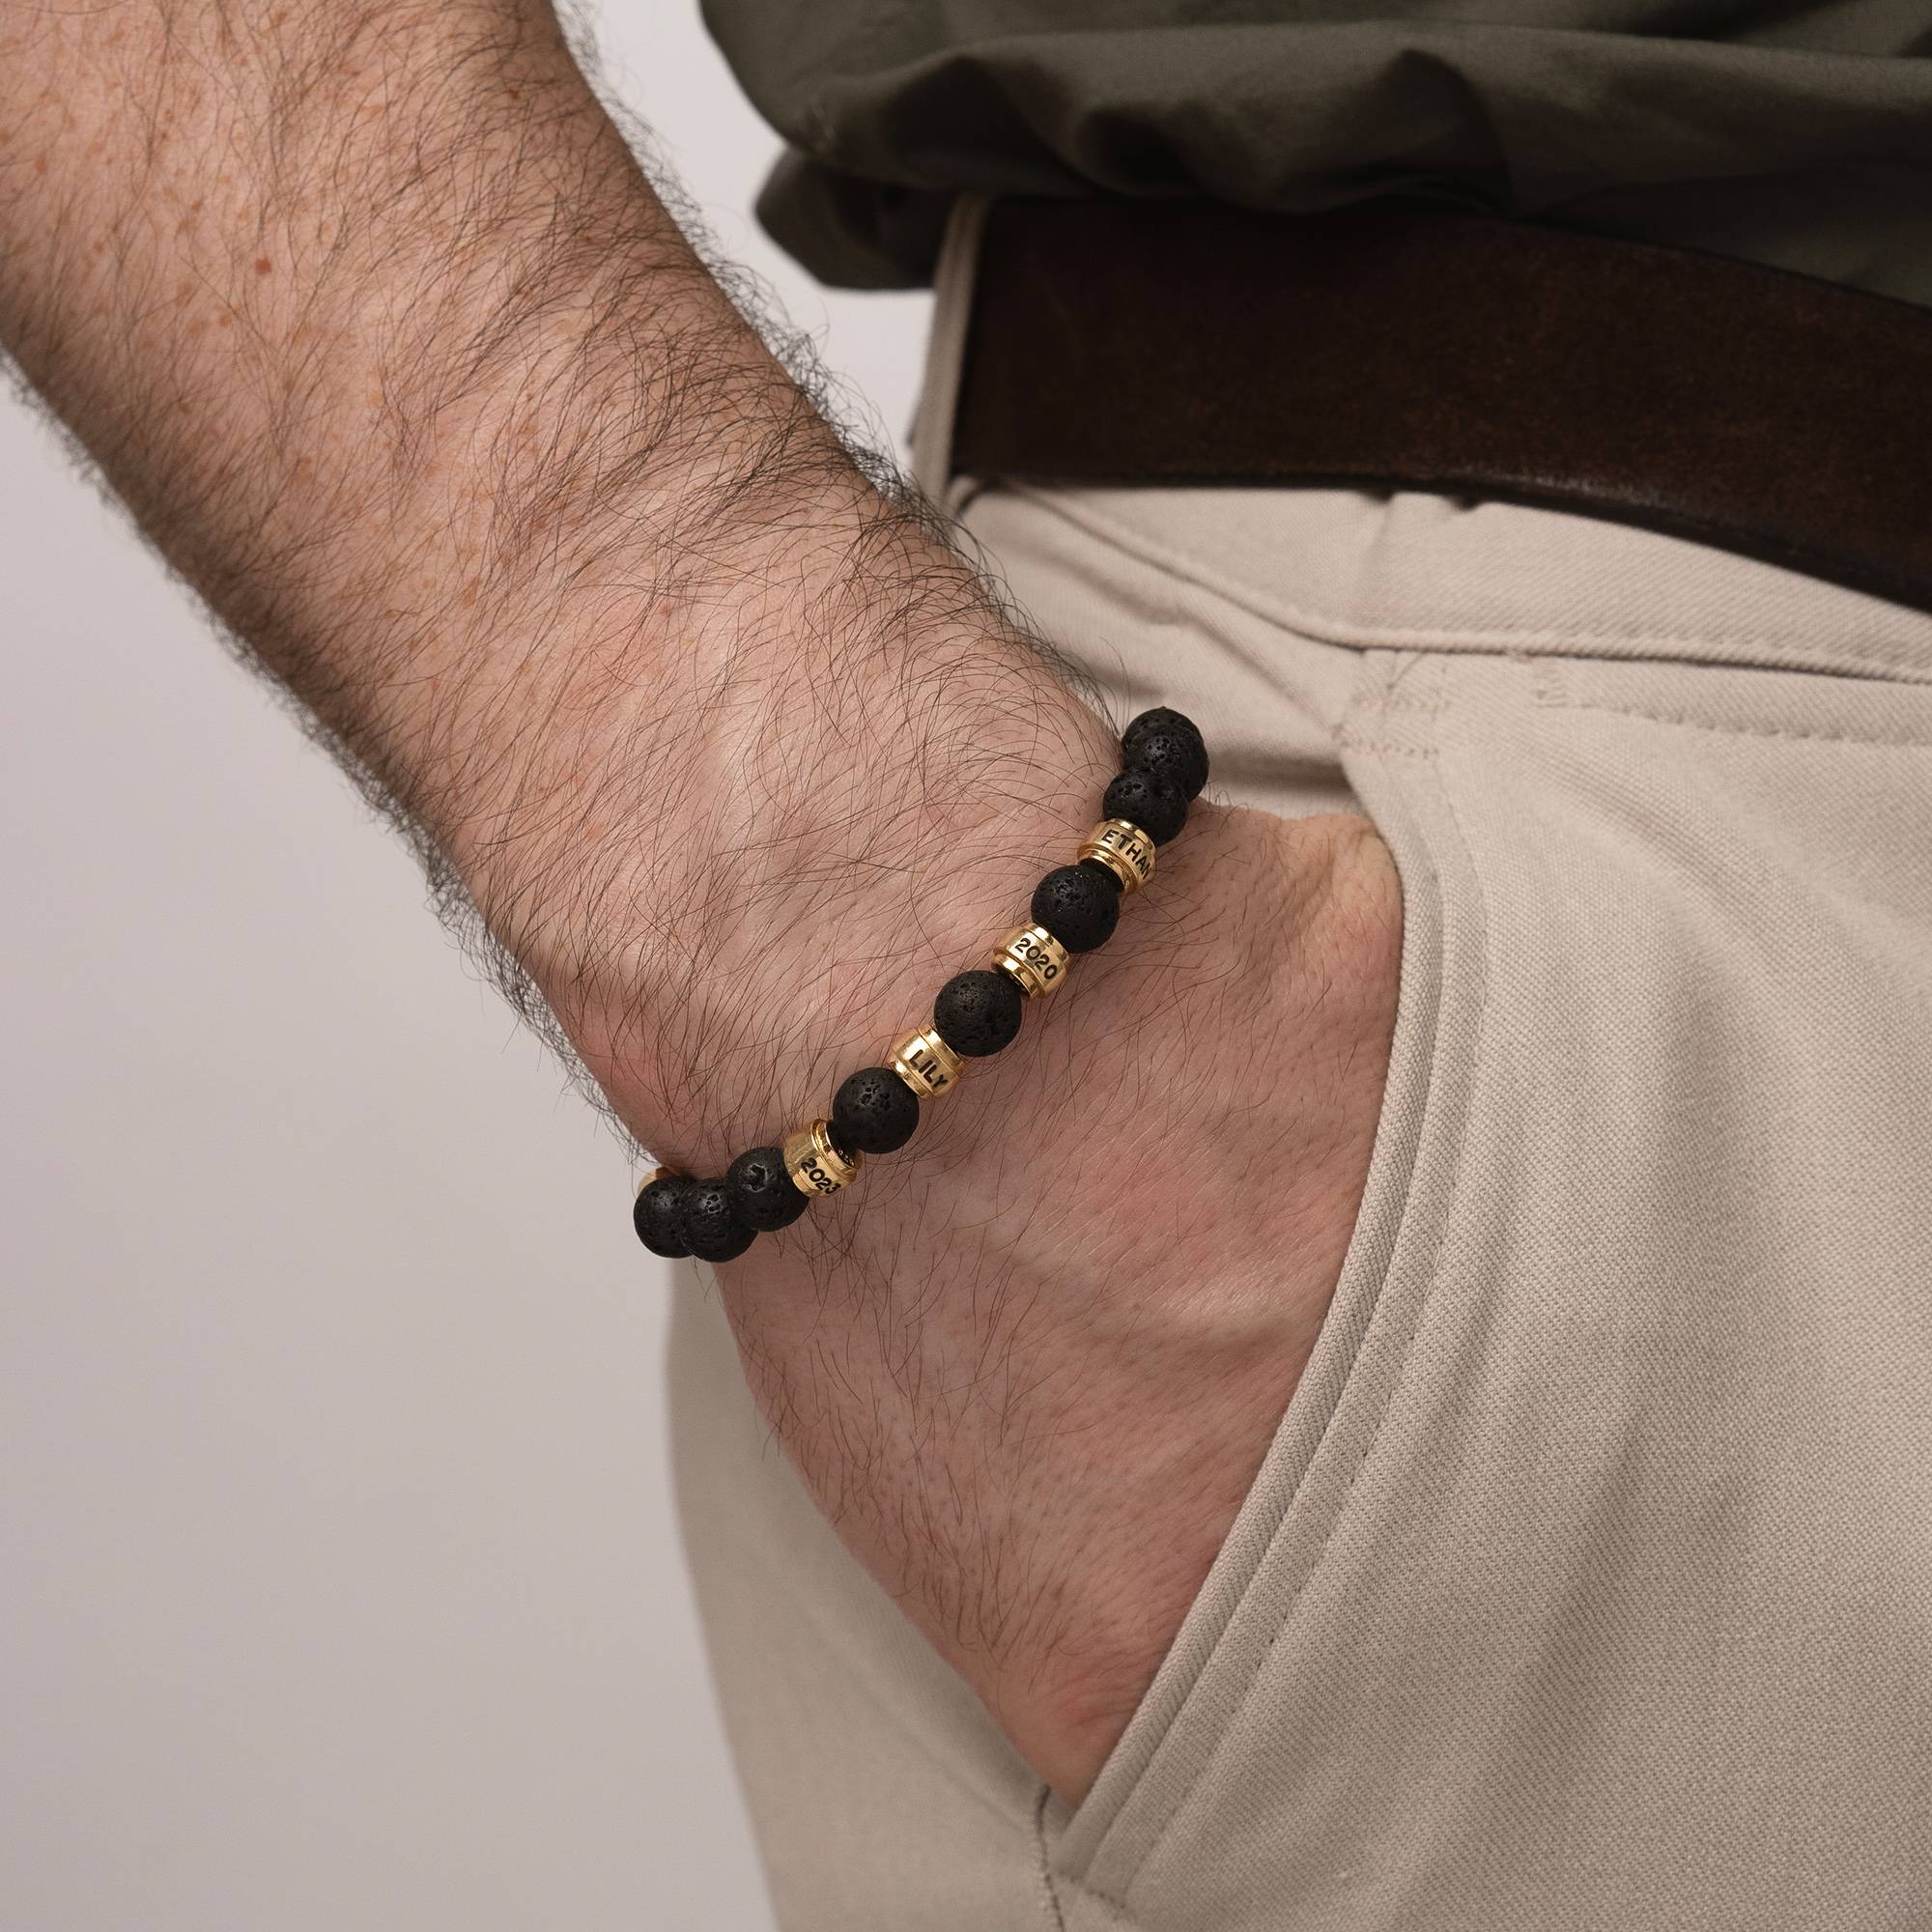 Jack Lavasteen en Gepersonaliseerde Vergulde Kralen Armband voor Mannen-3 Productfoto